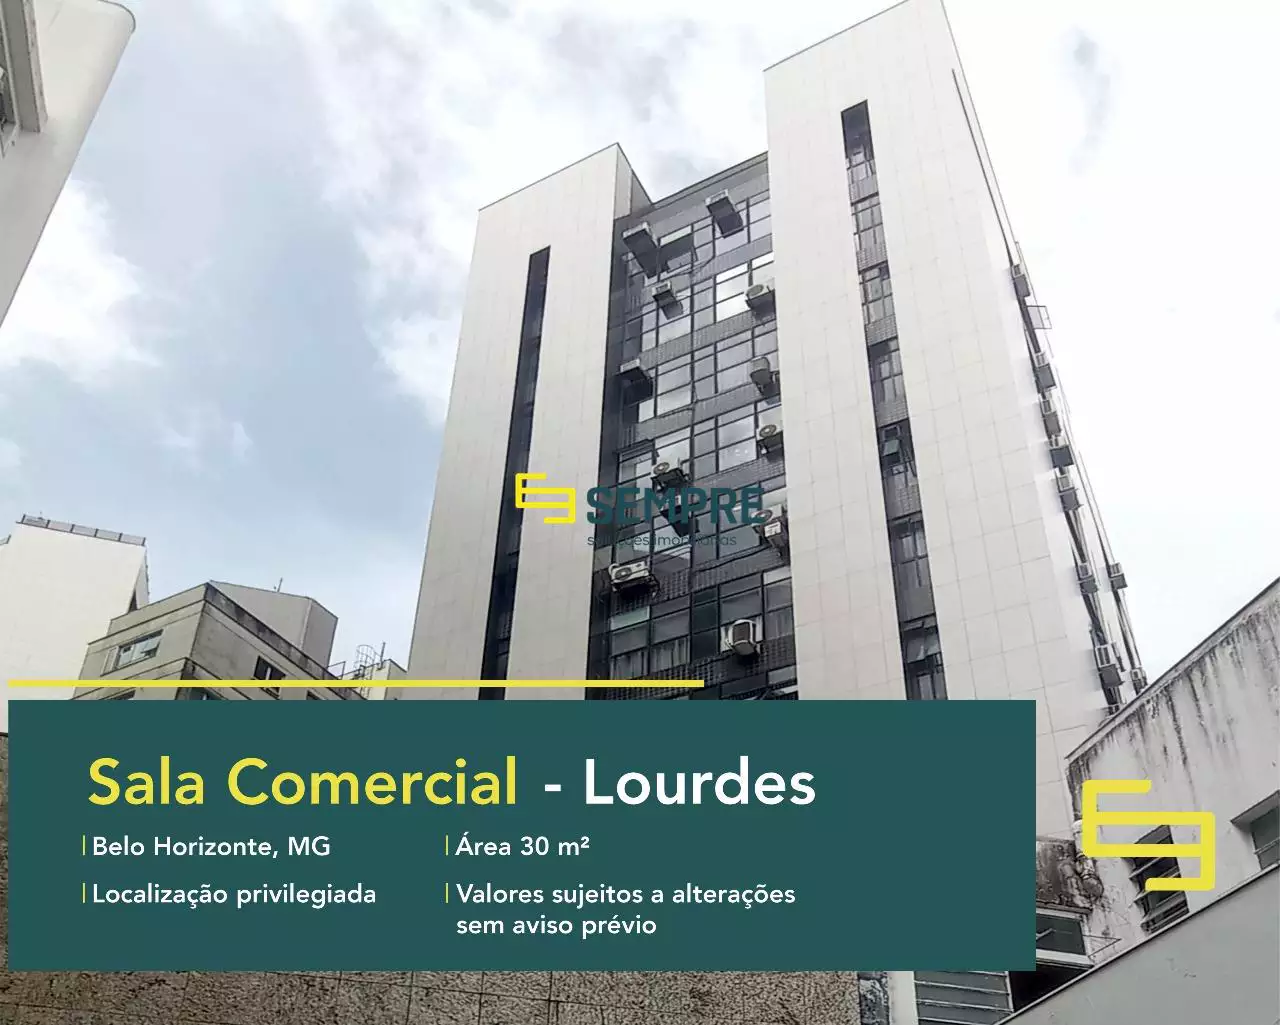 Sala comercial no bairro Lourdes para alugar em Belo Horizonte, em excelente localização. O estabelecimento comercial conta com área de 30 m².